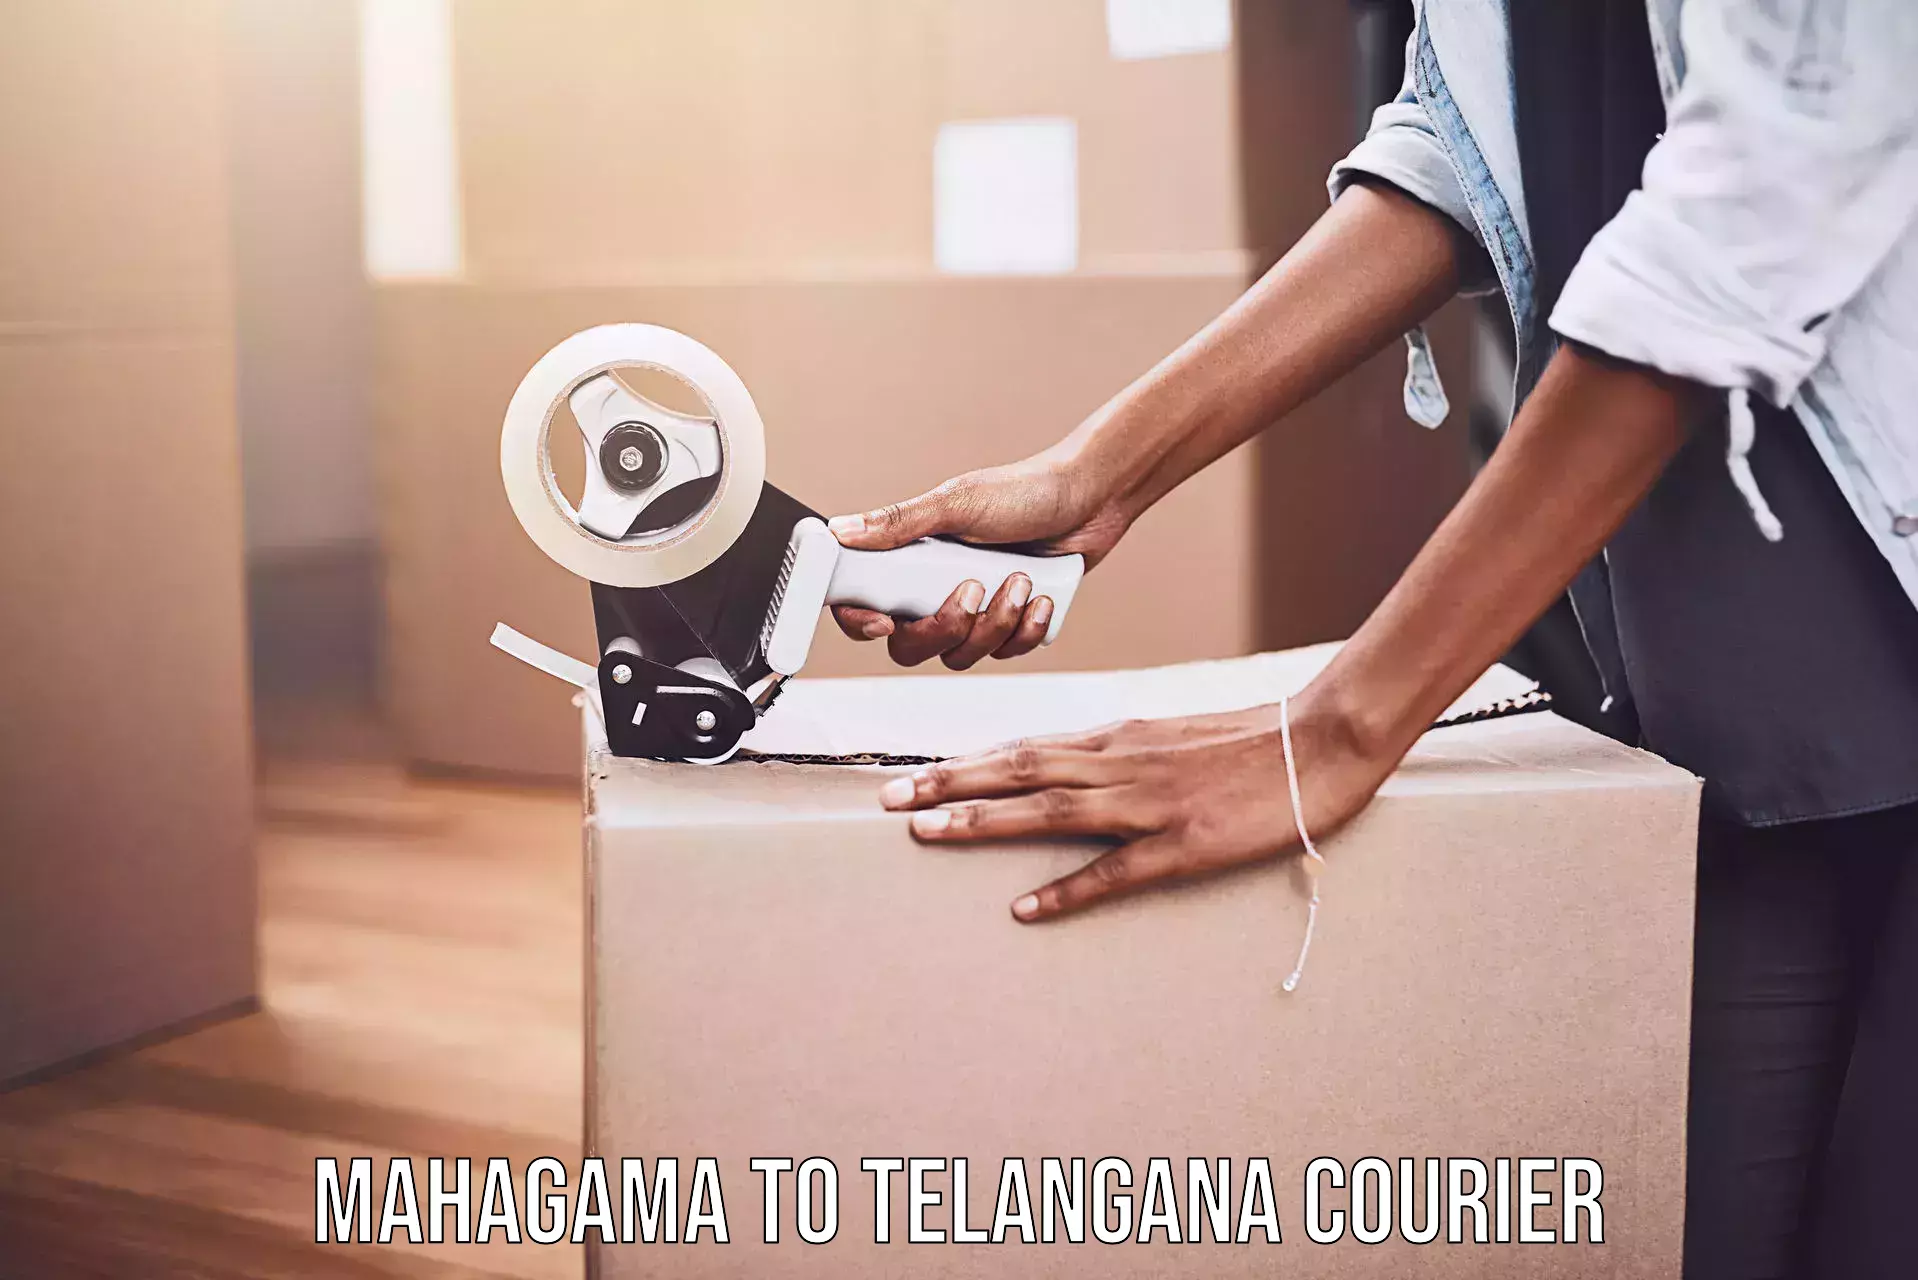 Courier service comparison in Mahagama to Bejjanki